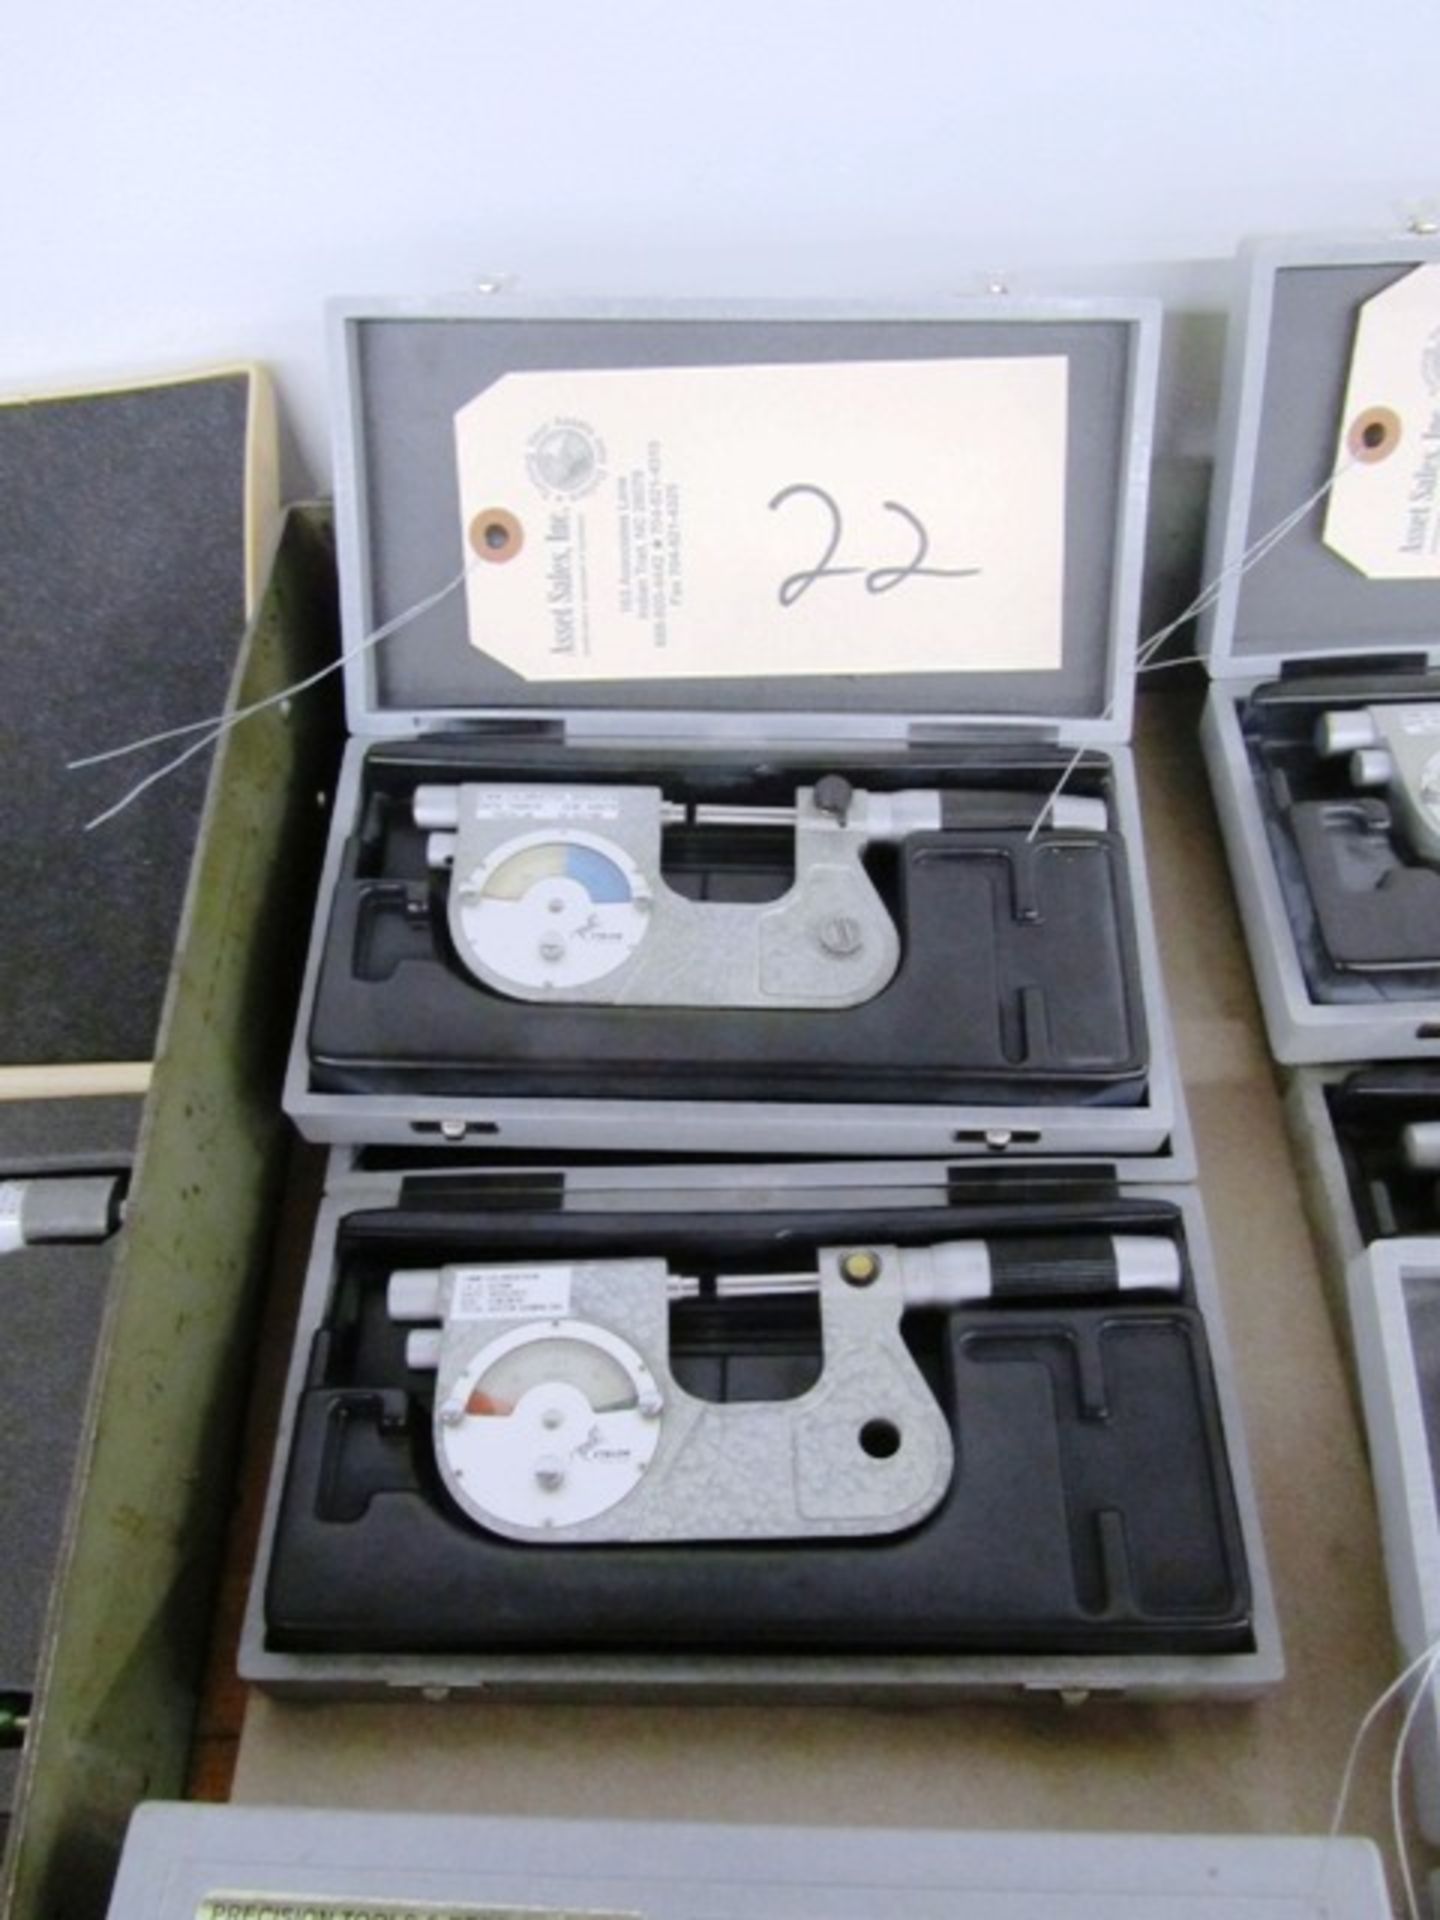 (2) Etalon Micrometers